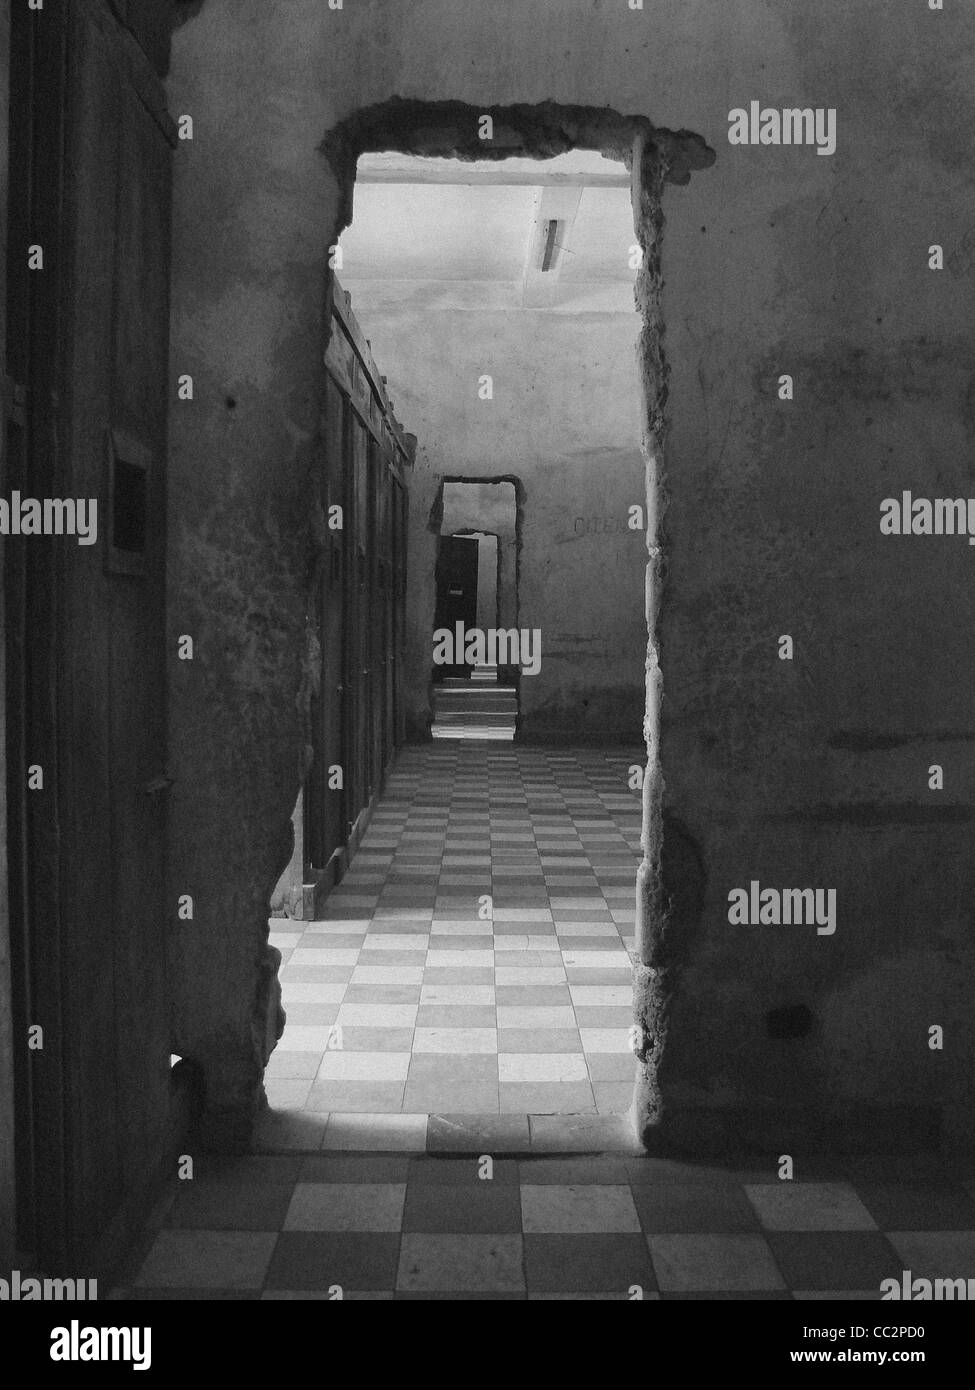 Vues en noir et blanc à l'intérieur de la prison des Khmers S-21 à Phnom Penh, Cambodge. Banque D'Images